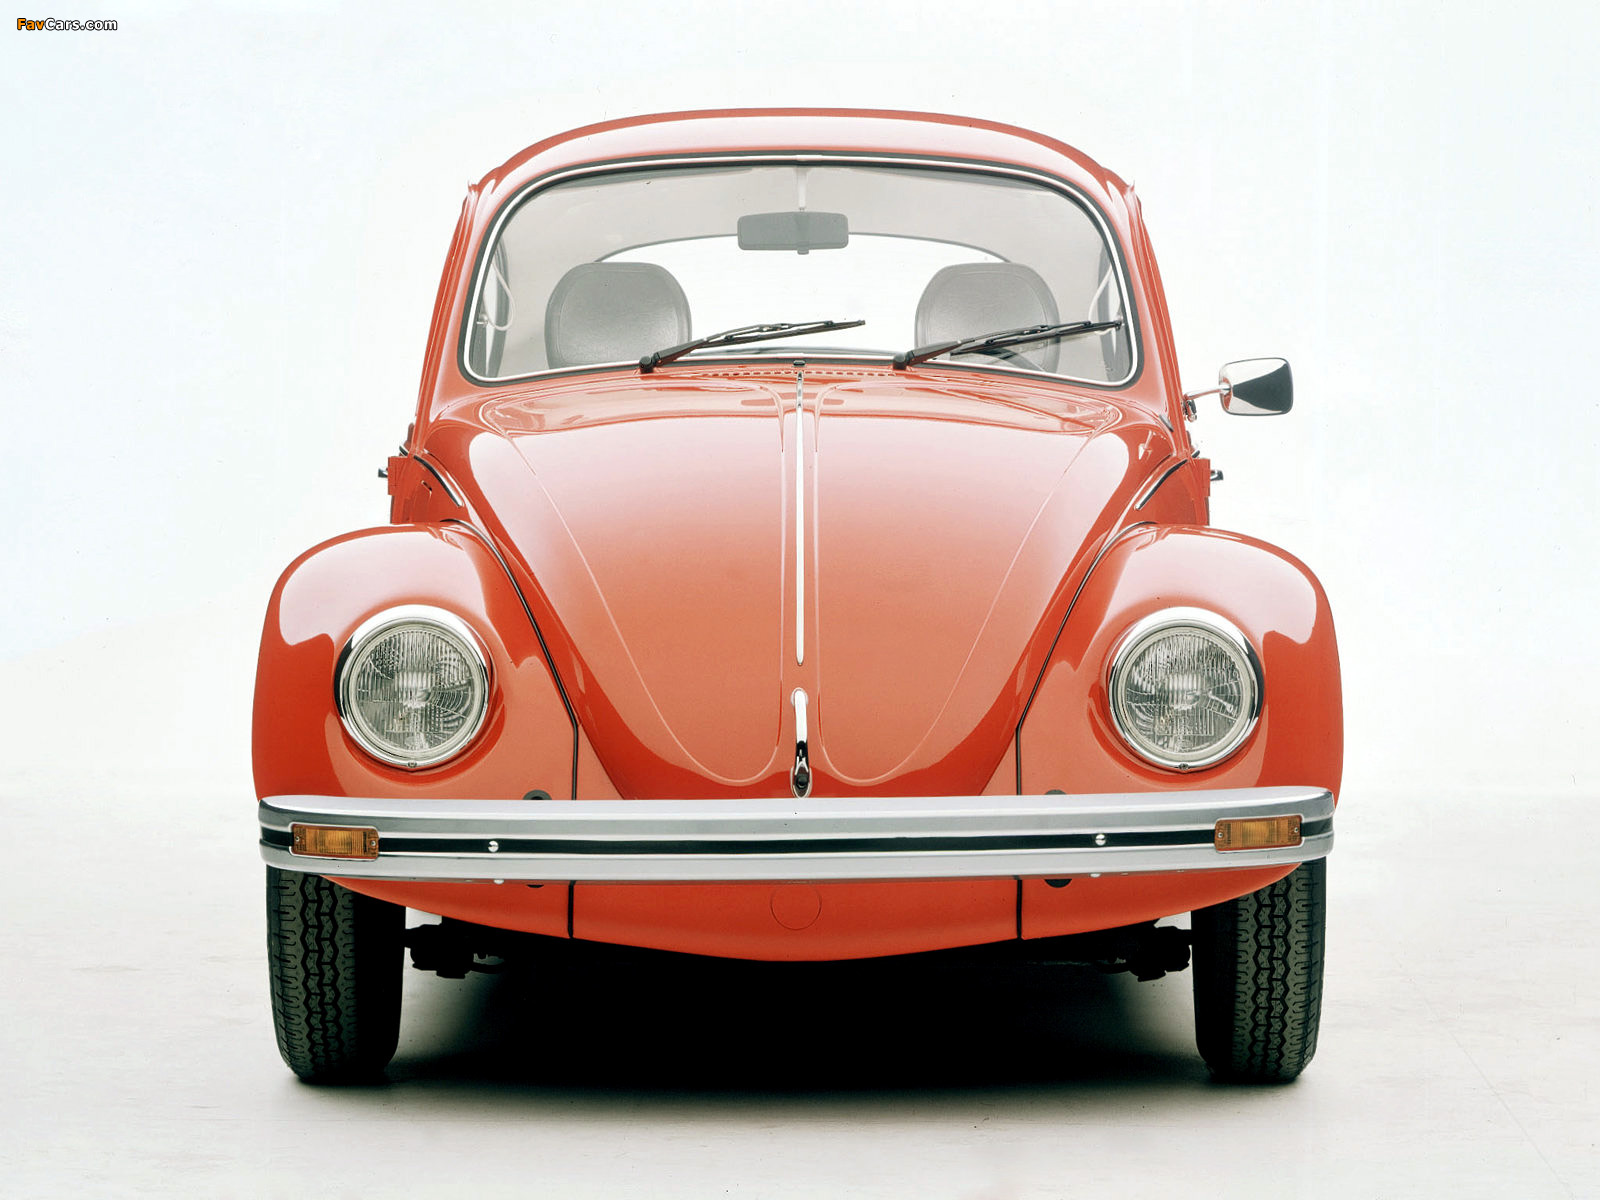 Photos of Volkswagen Beetle / Käfer (1600 x 1200)